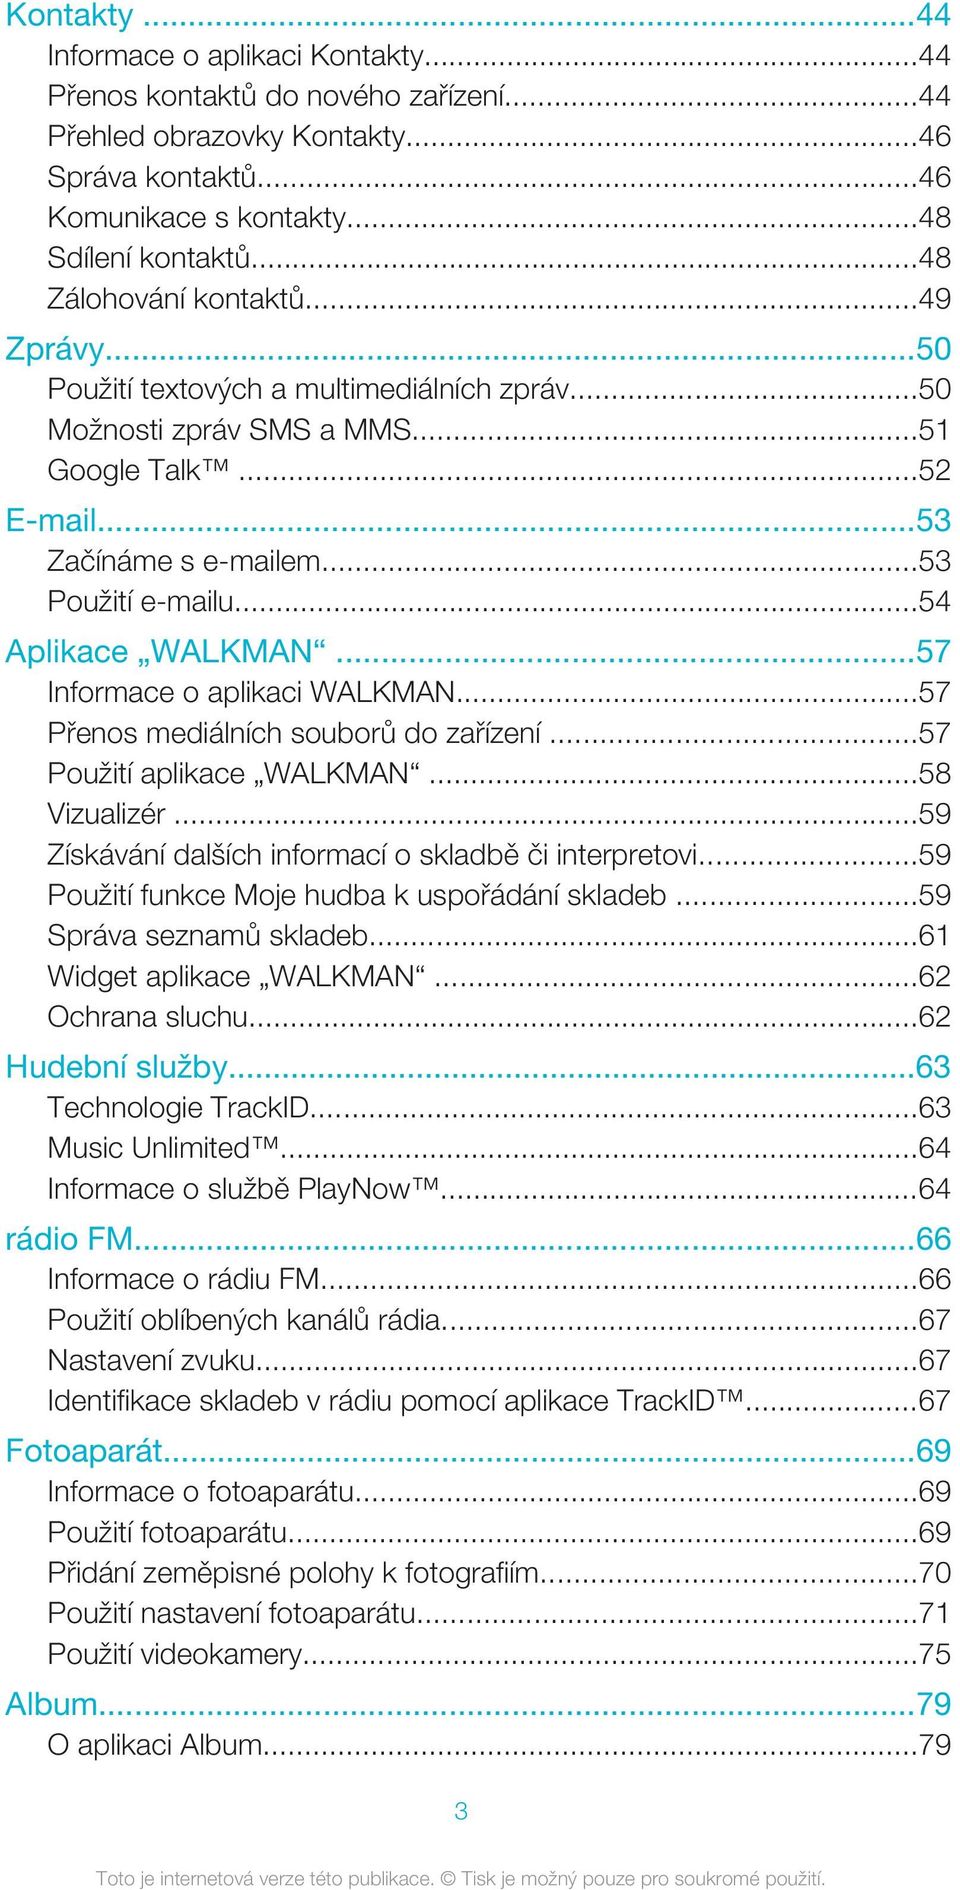 ..54 Aplikace WALKMAN...57 Informace o aplikaci WALKMAN...57 Přenos mediálních souborů do zařízení...57 Použití aplikace WALKMAN...58 Vizualizér.